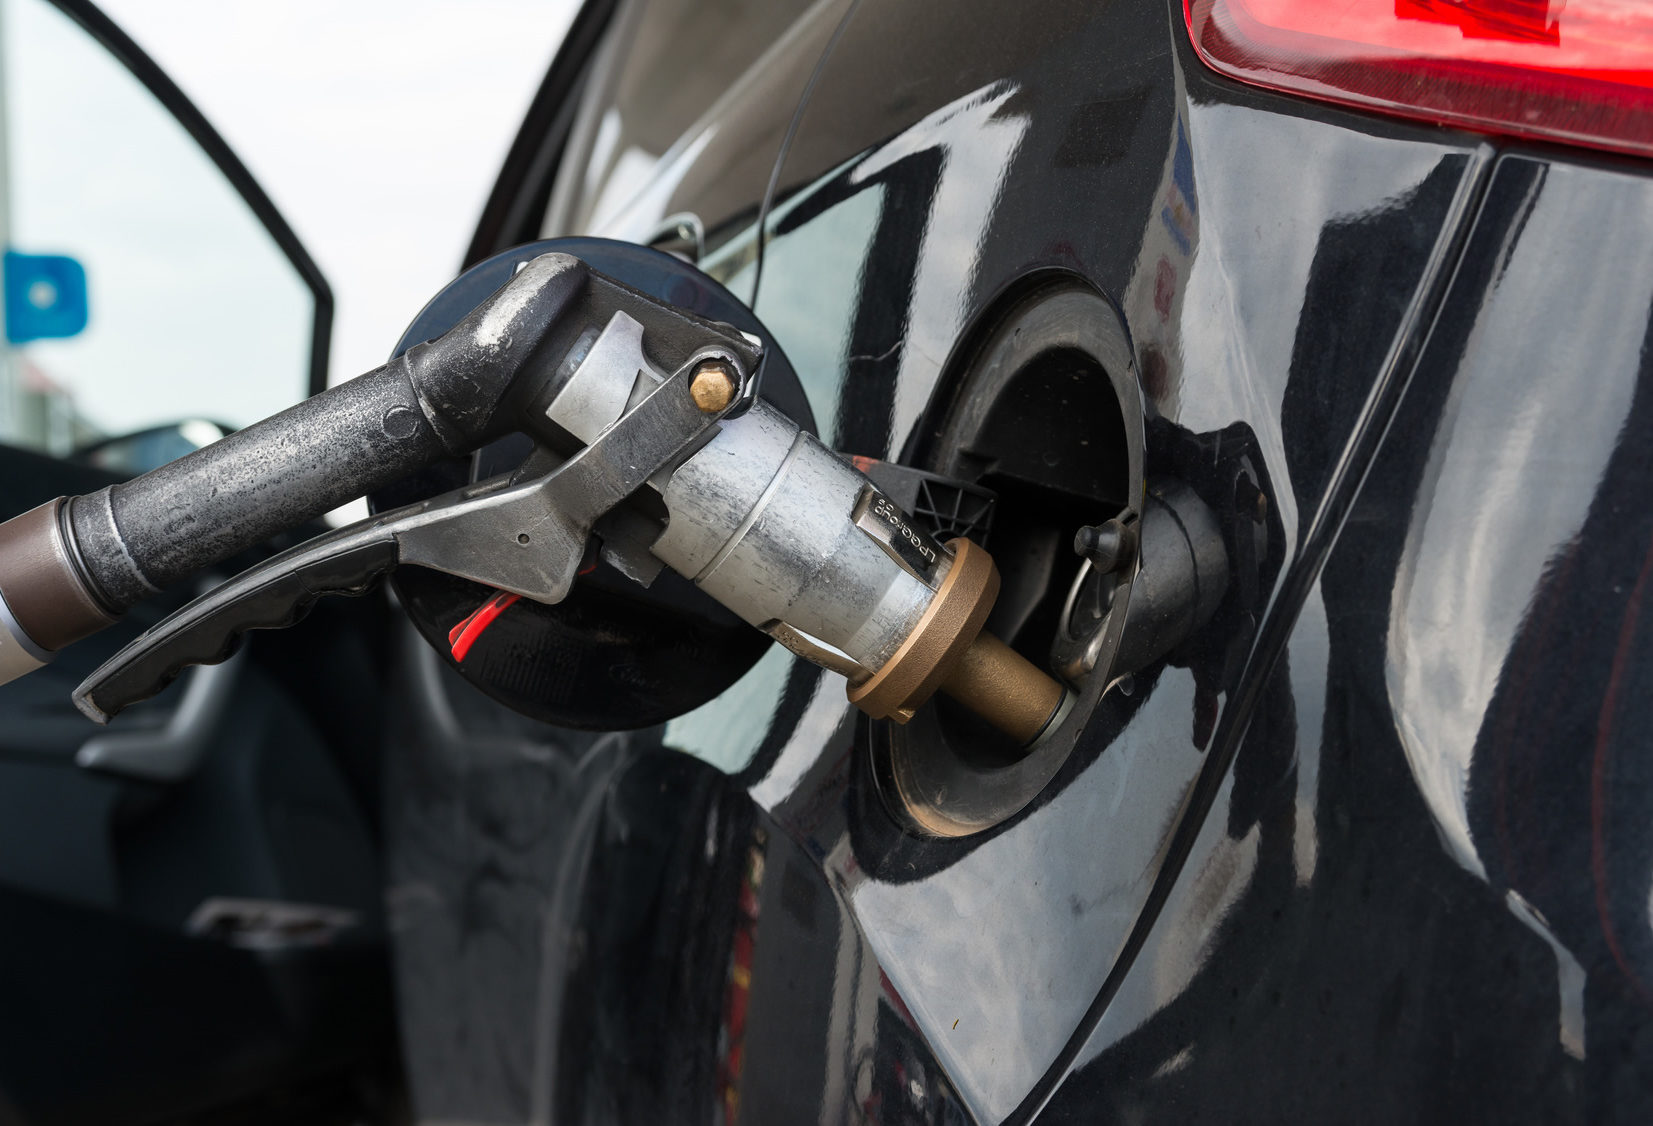 Benzina: i prezzi dei carburanti dovrebbero attestarsi almeno a 32 centesimi in meno. A causa di tale sovrapprezzo gli automobilisti, solo per costi diretti, pagano +384 Euro annui.